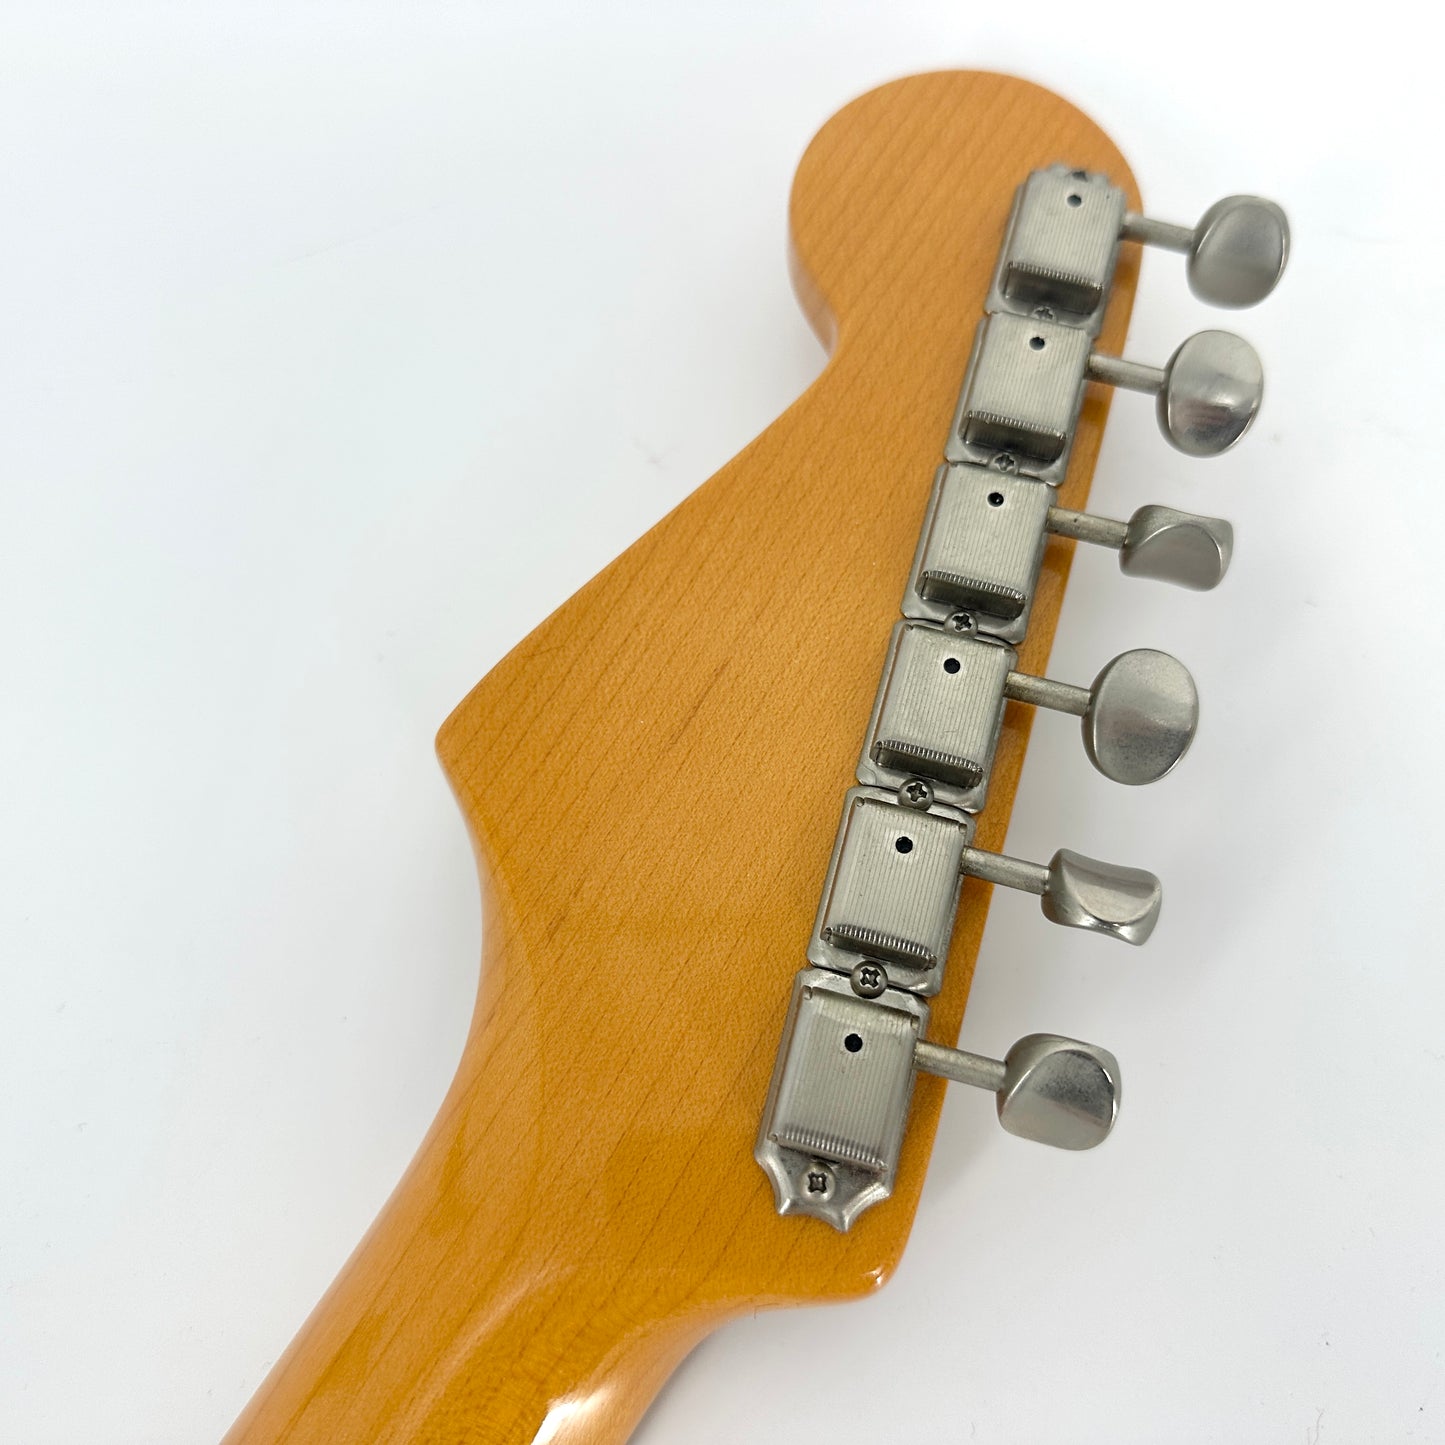 2005 Fender Eric Johnson Stratocaster -  2 Tone Sunburst